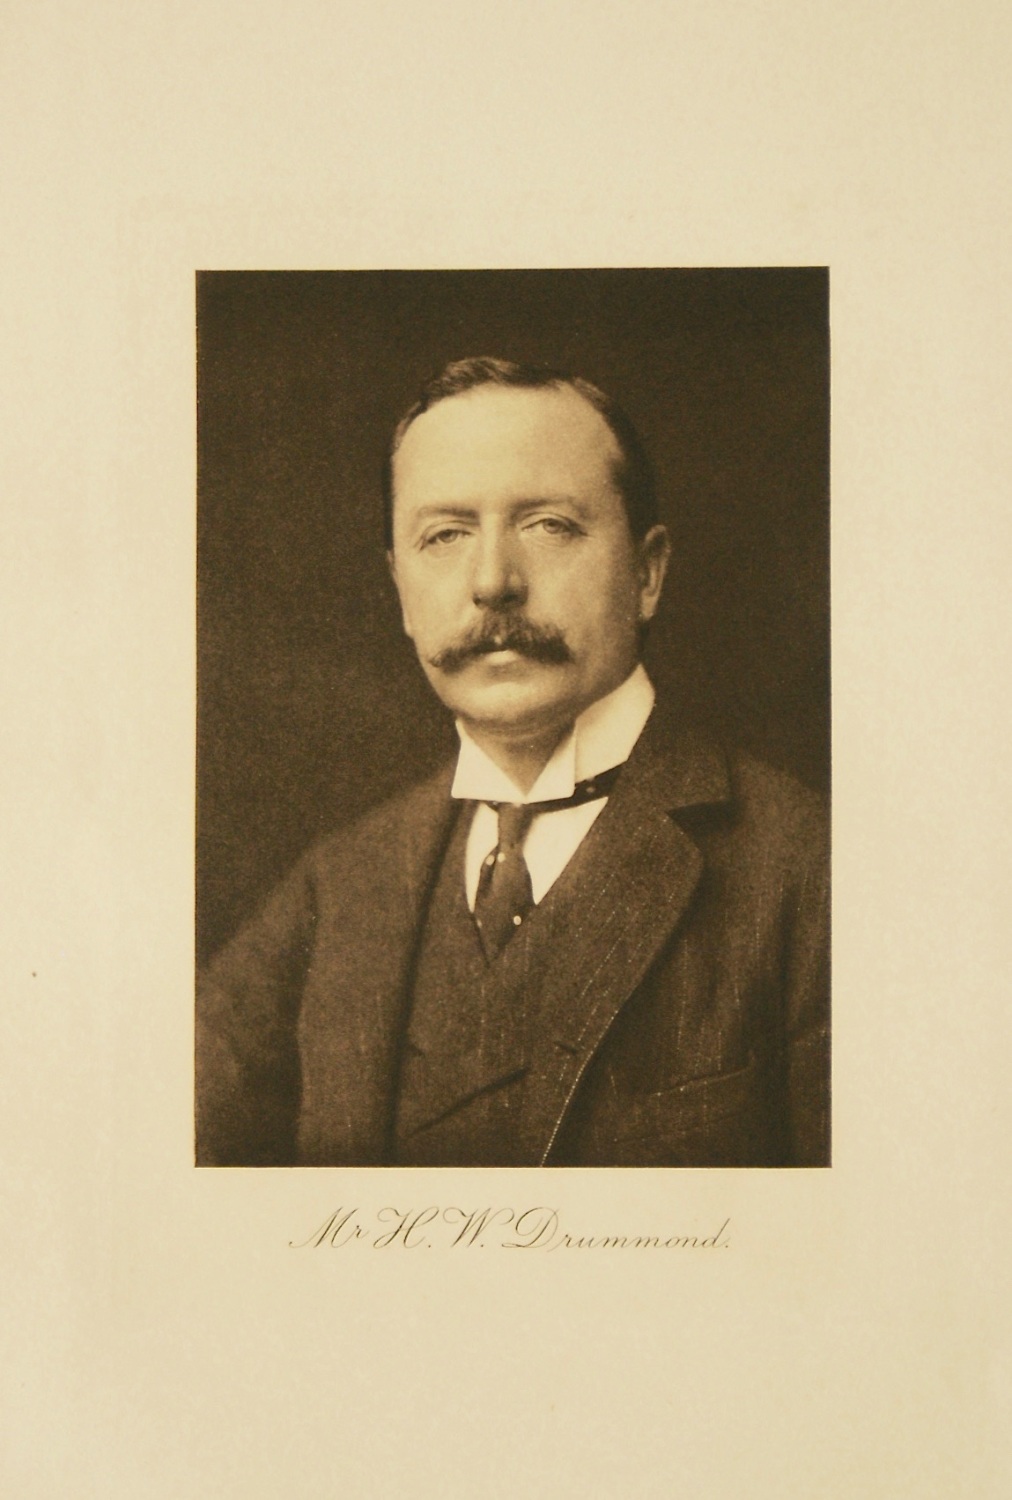 Mr. H. W. Drummond. 1912